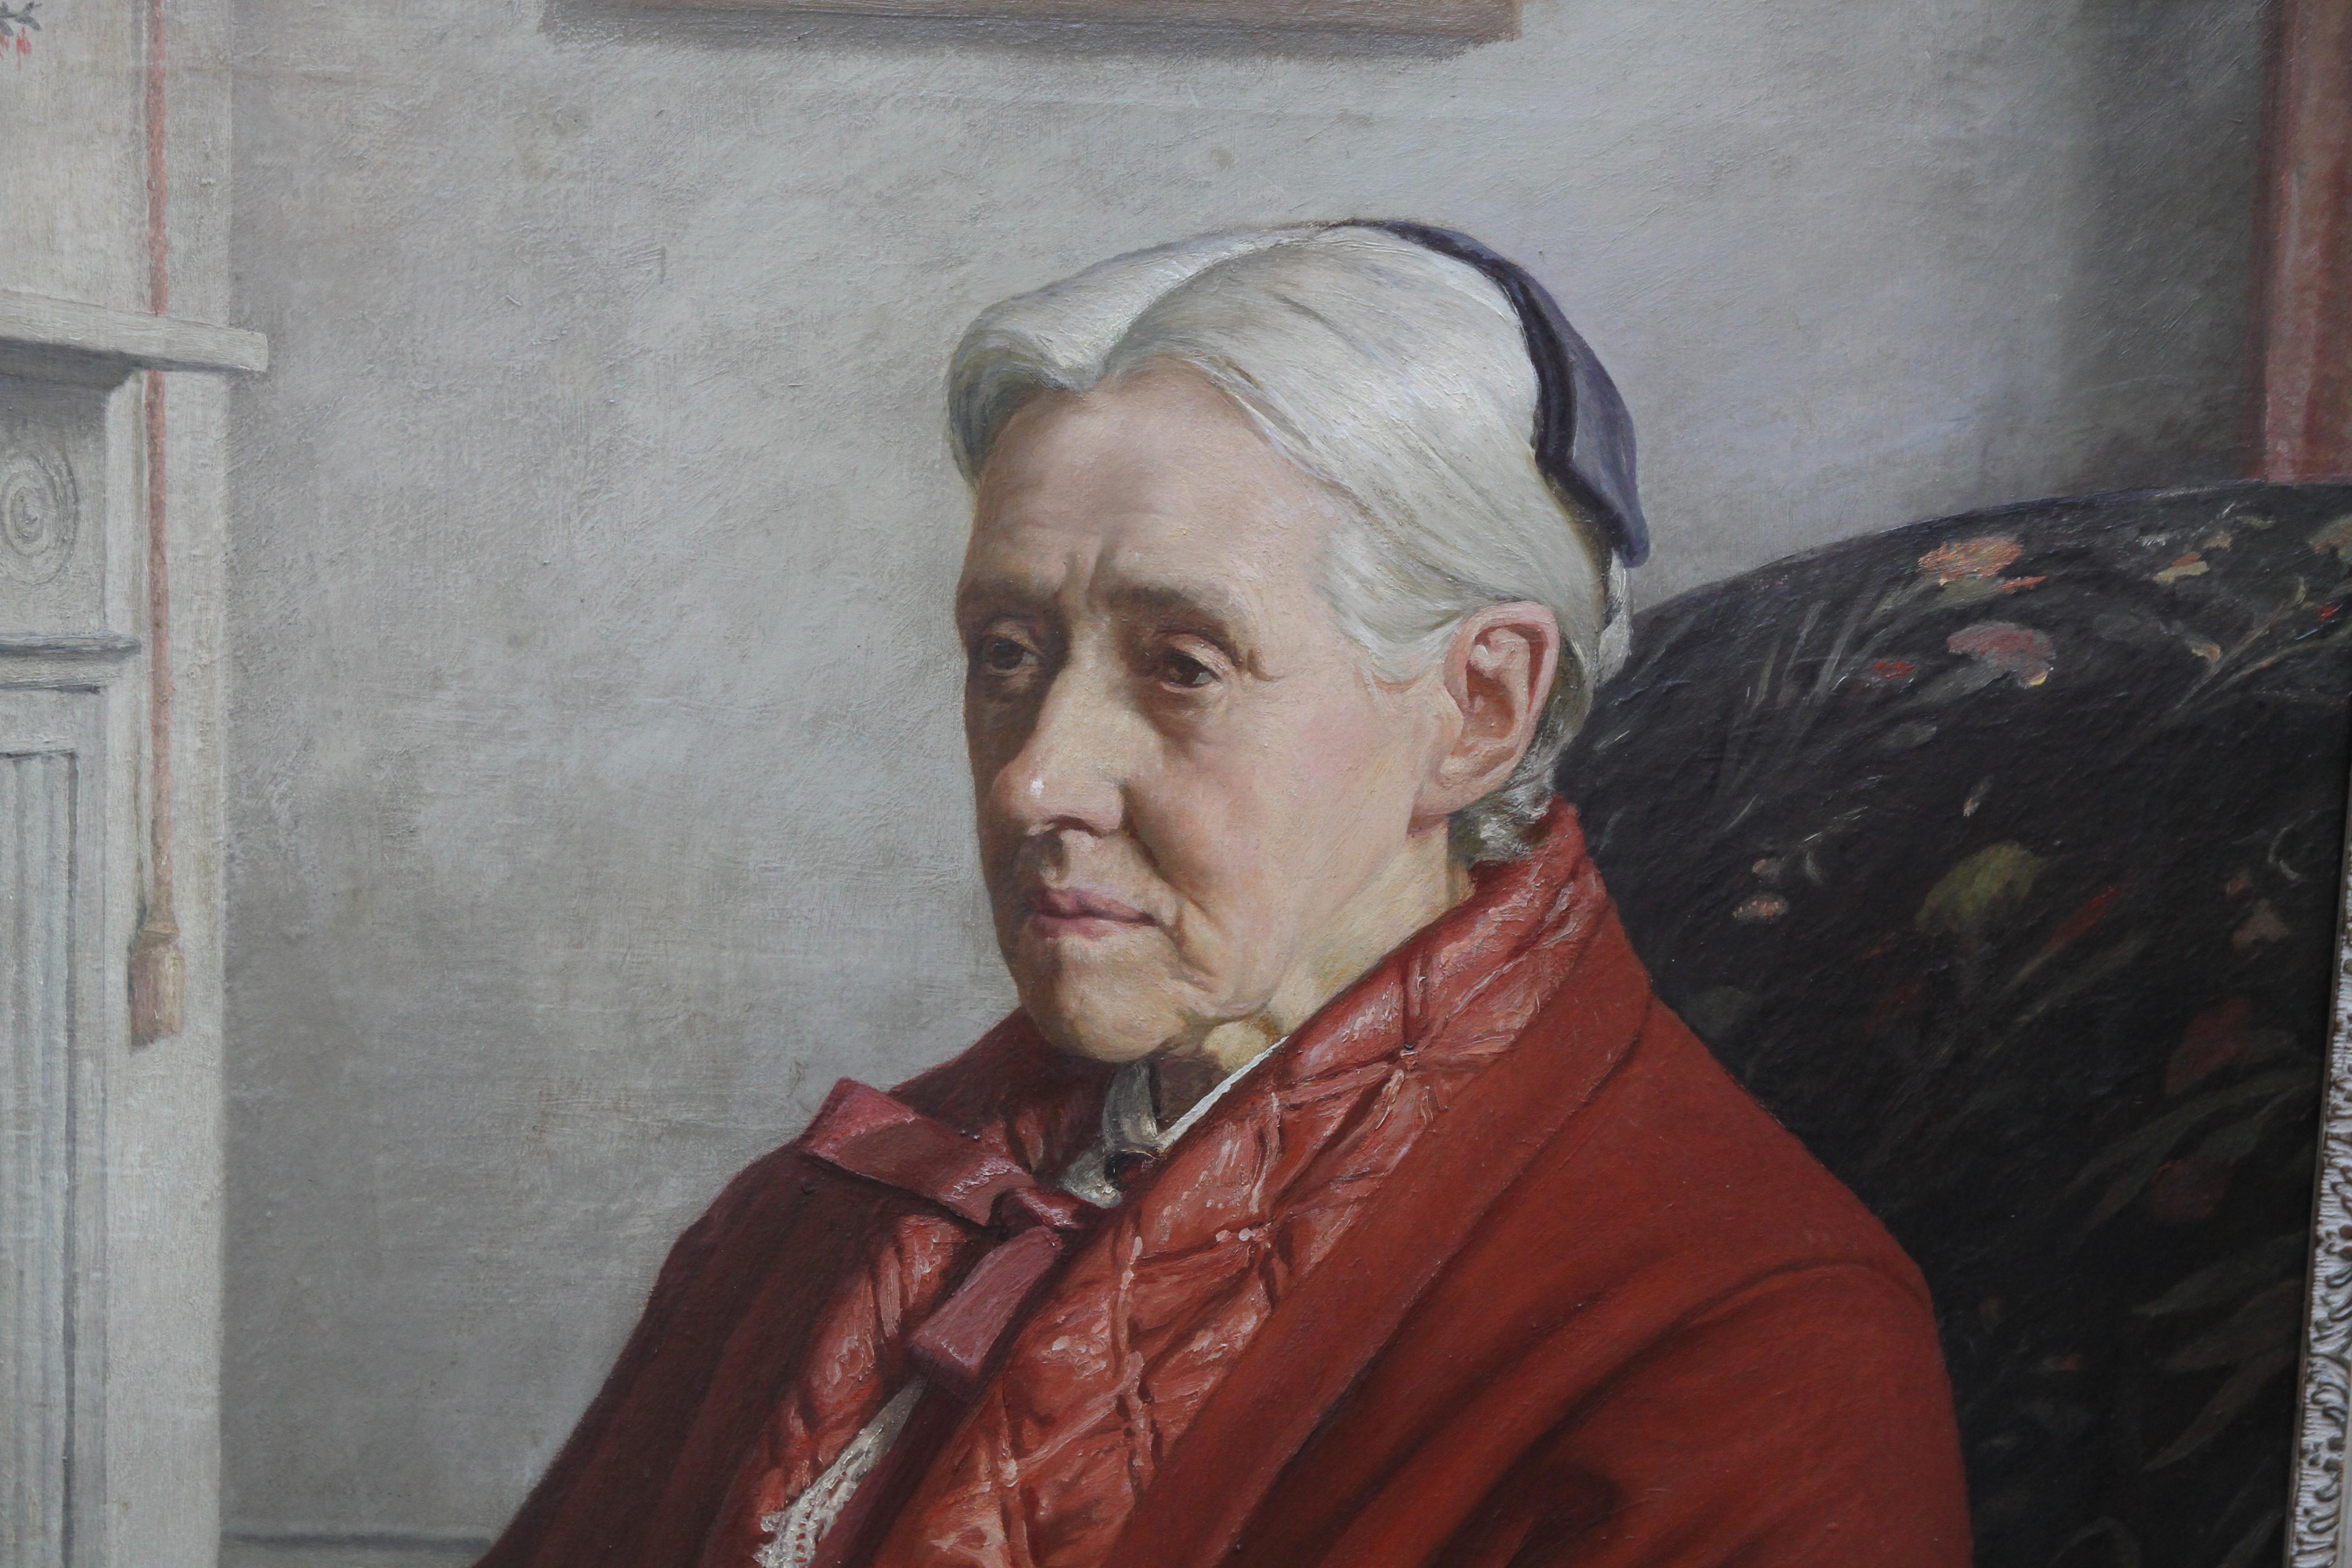 Ein wunderschönes, farbenfrohes britisches Porträtgemälde in Öl auf Leinwand aus den 1920er Jahren von Francis Dodd RA und mit umfangreicher Provenienz. Das Werk stellt die Feministin und berühmte Künstlerin Susan Isabel Dacre dar, die im späten 19.